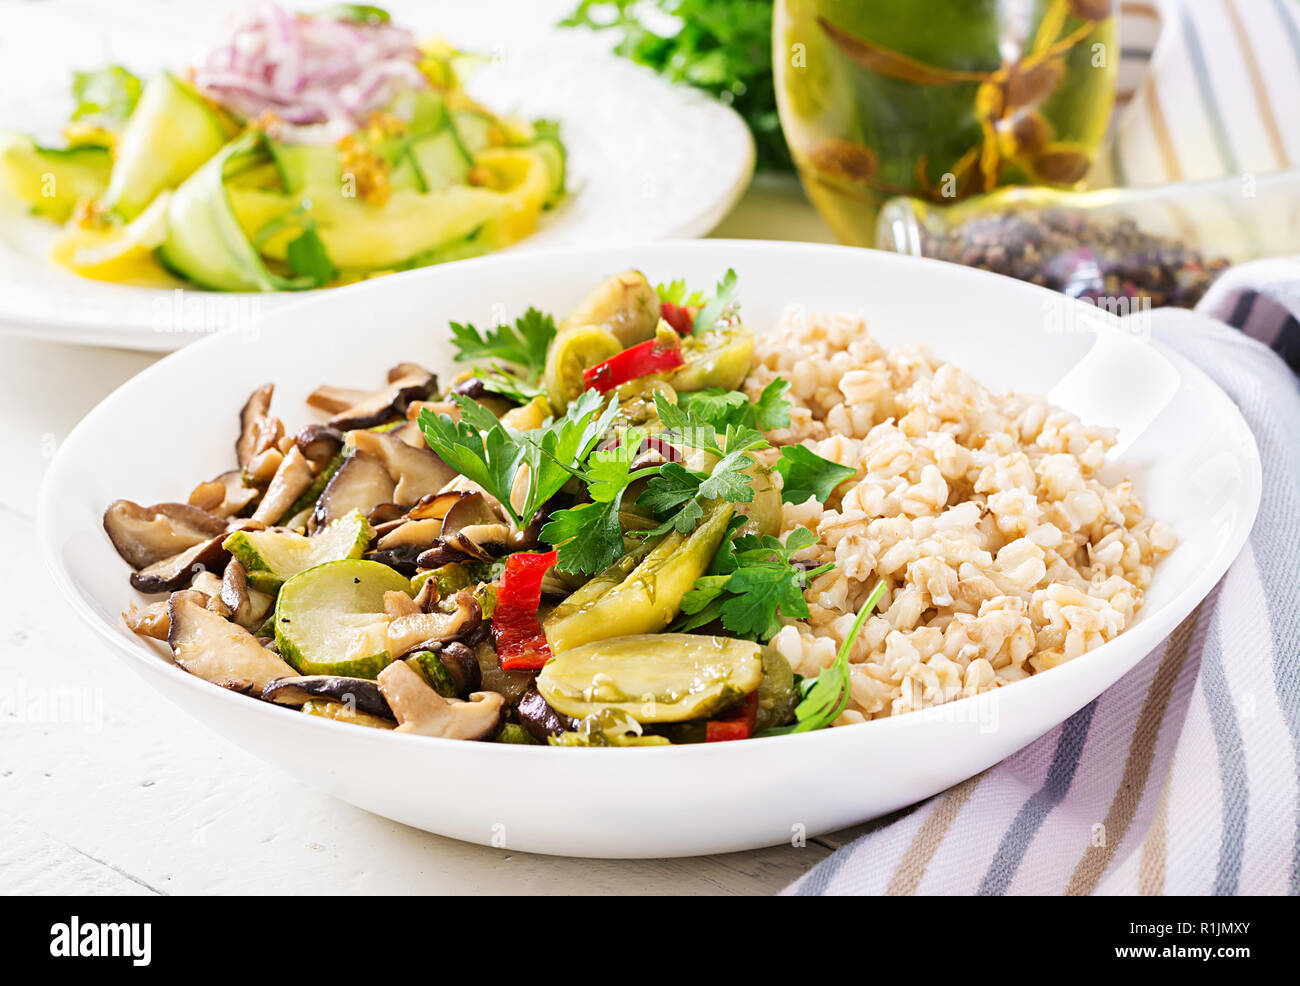 Menu de régime. Repas végétarien sain - les champignons shiitake, courgette et le porridge d'avoine sur la cuvette. La nourriture végétalienne. Banque D'Images